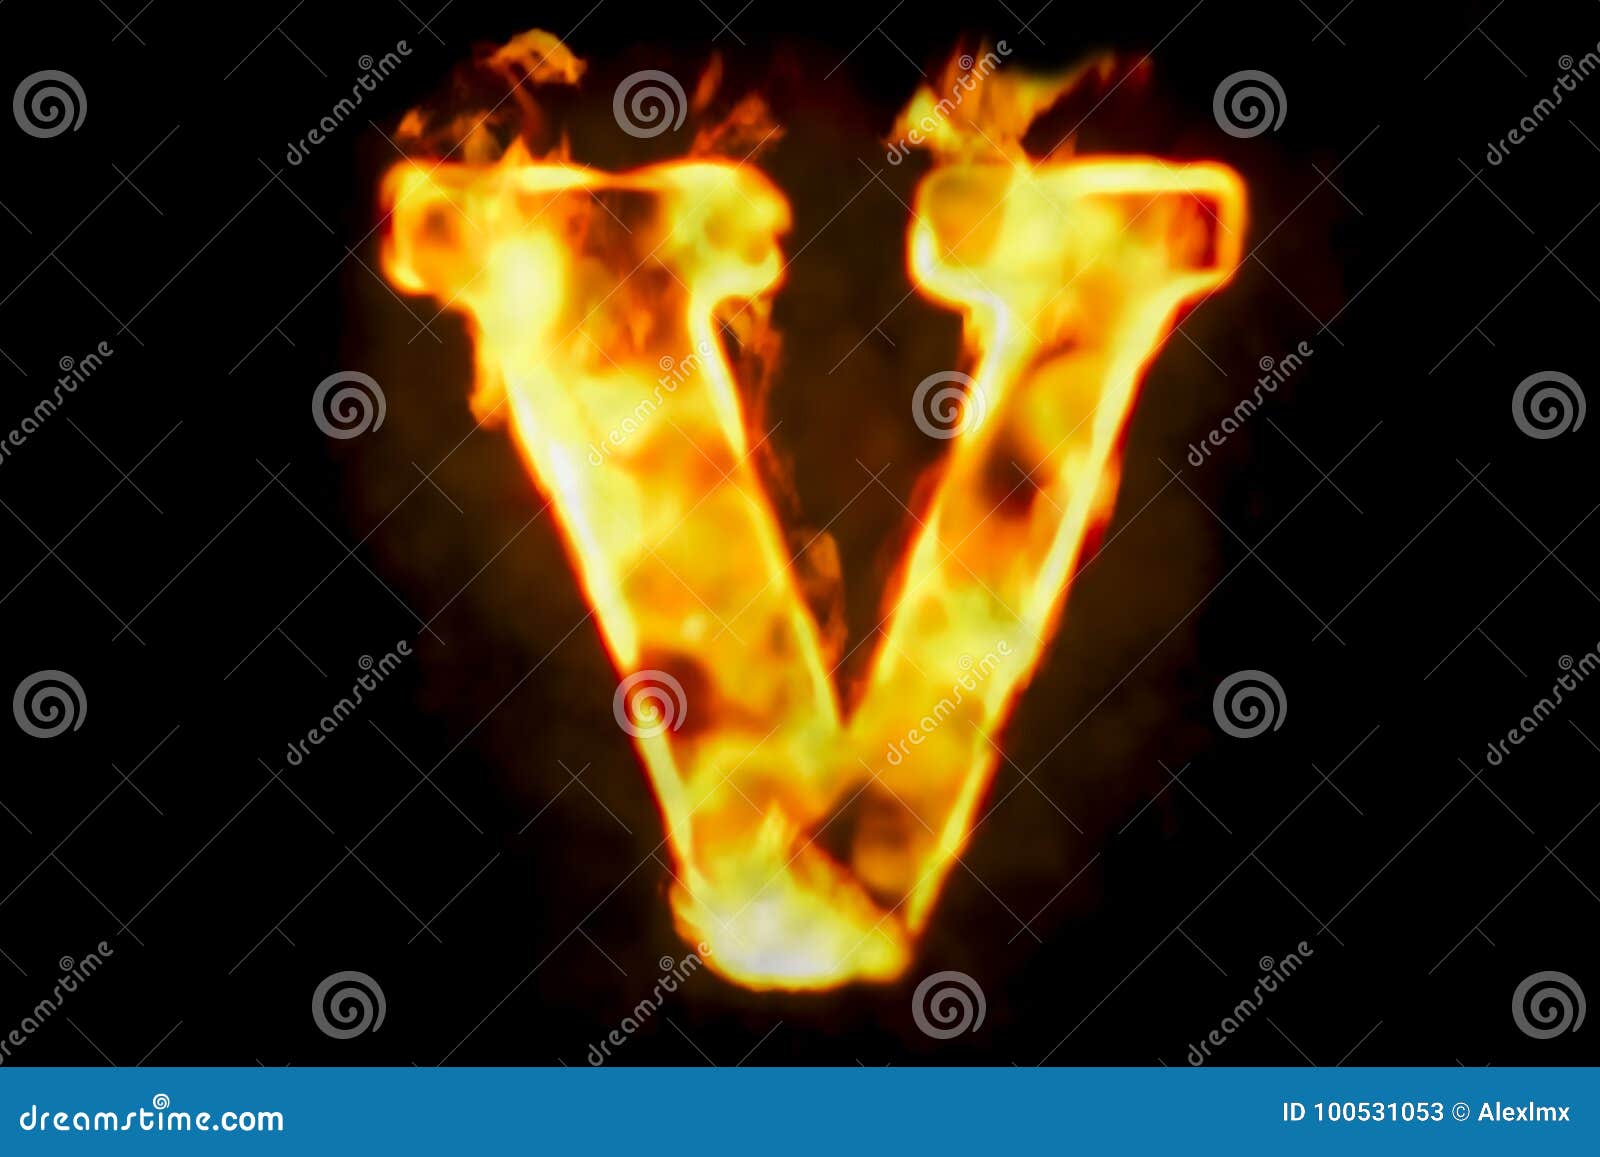 Fire Letter V of Burning Flame Light, 3D Rendering Stock ...